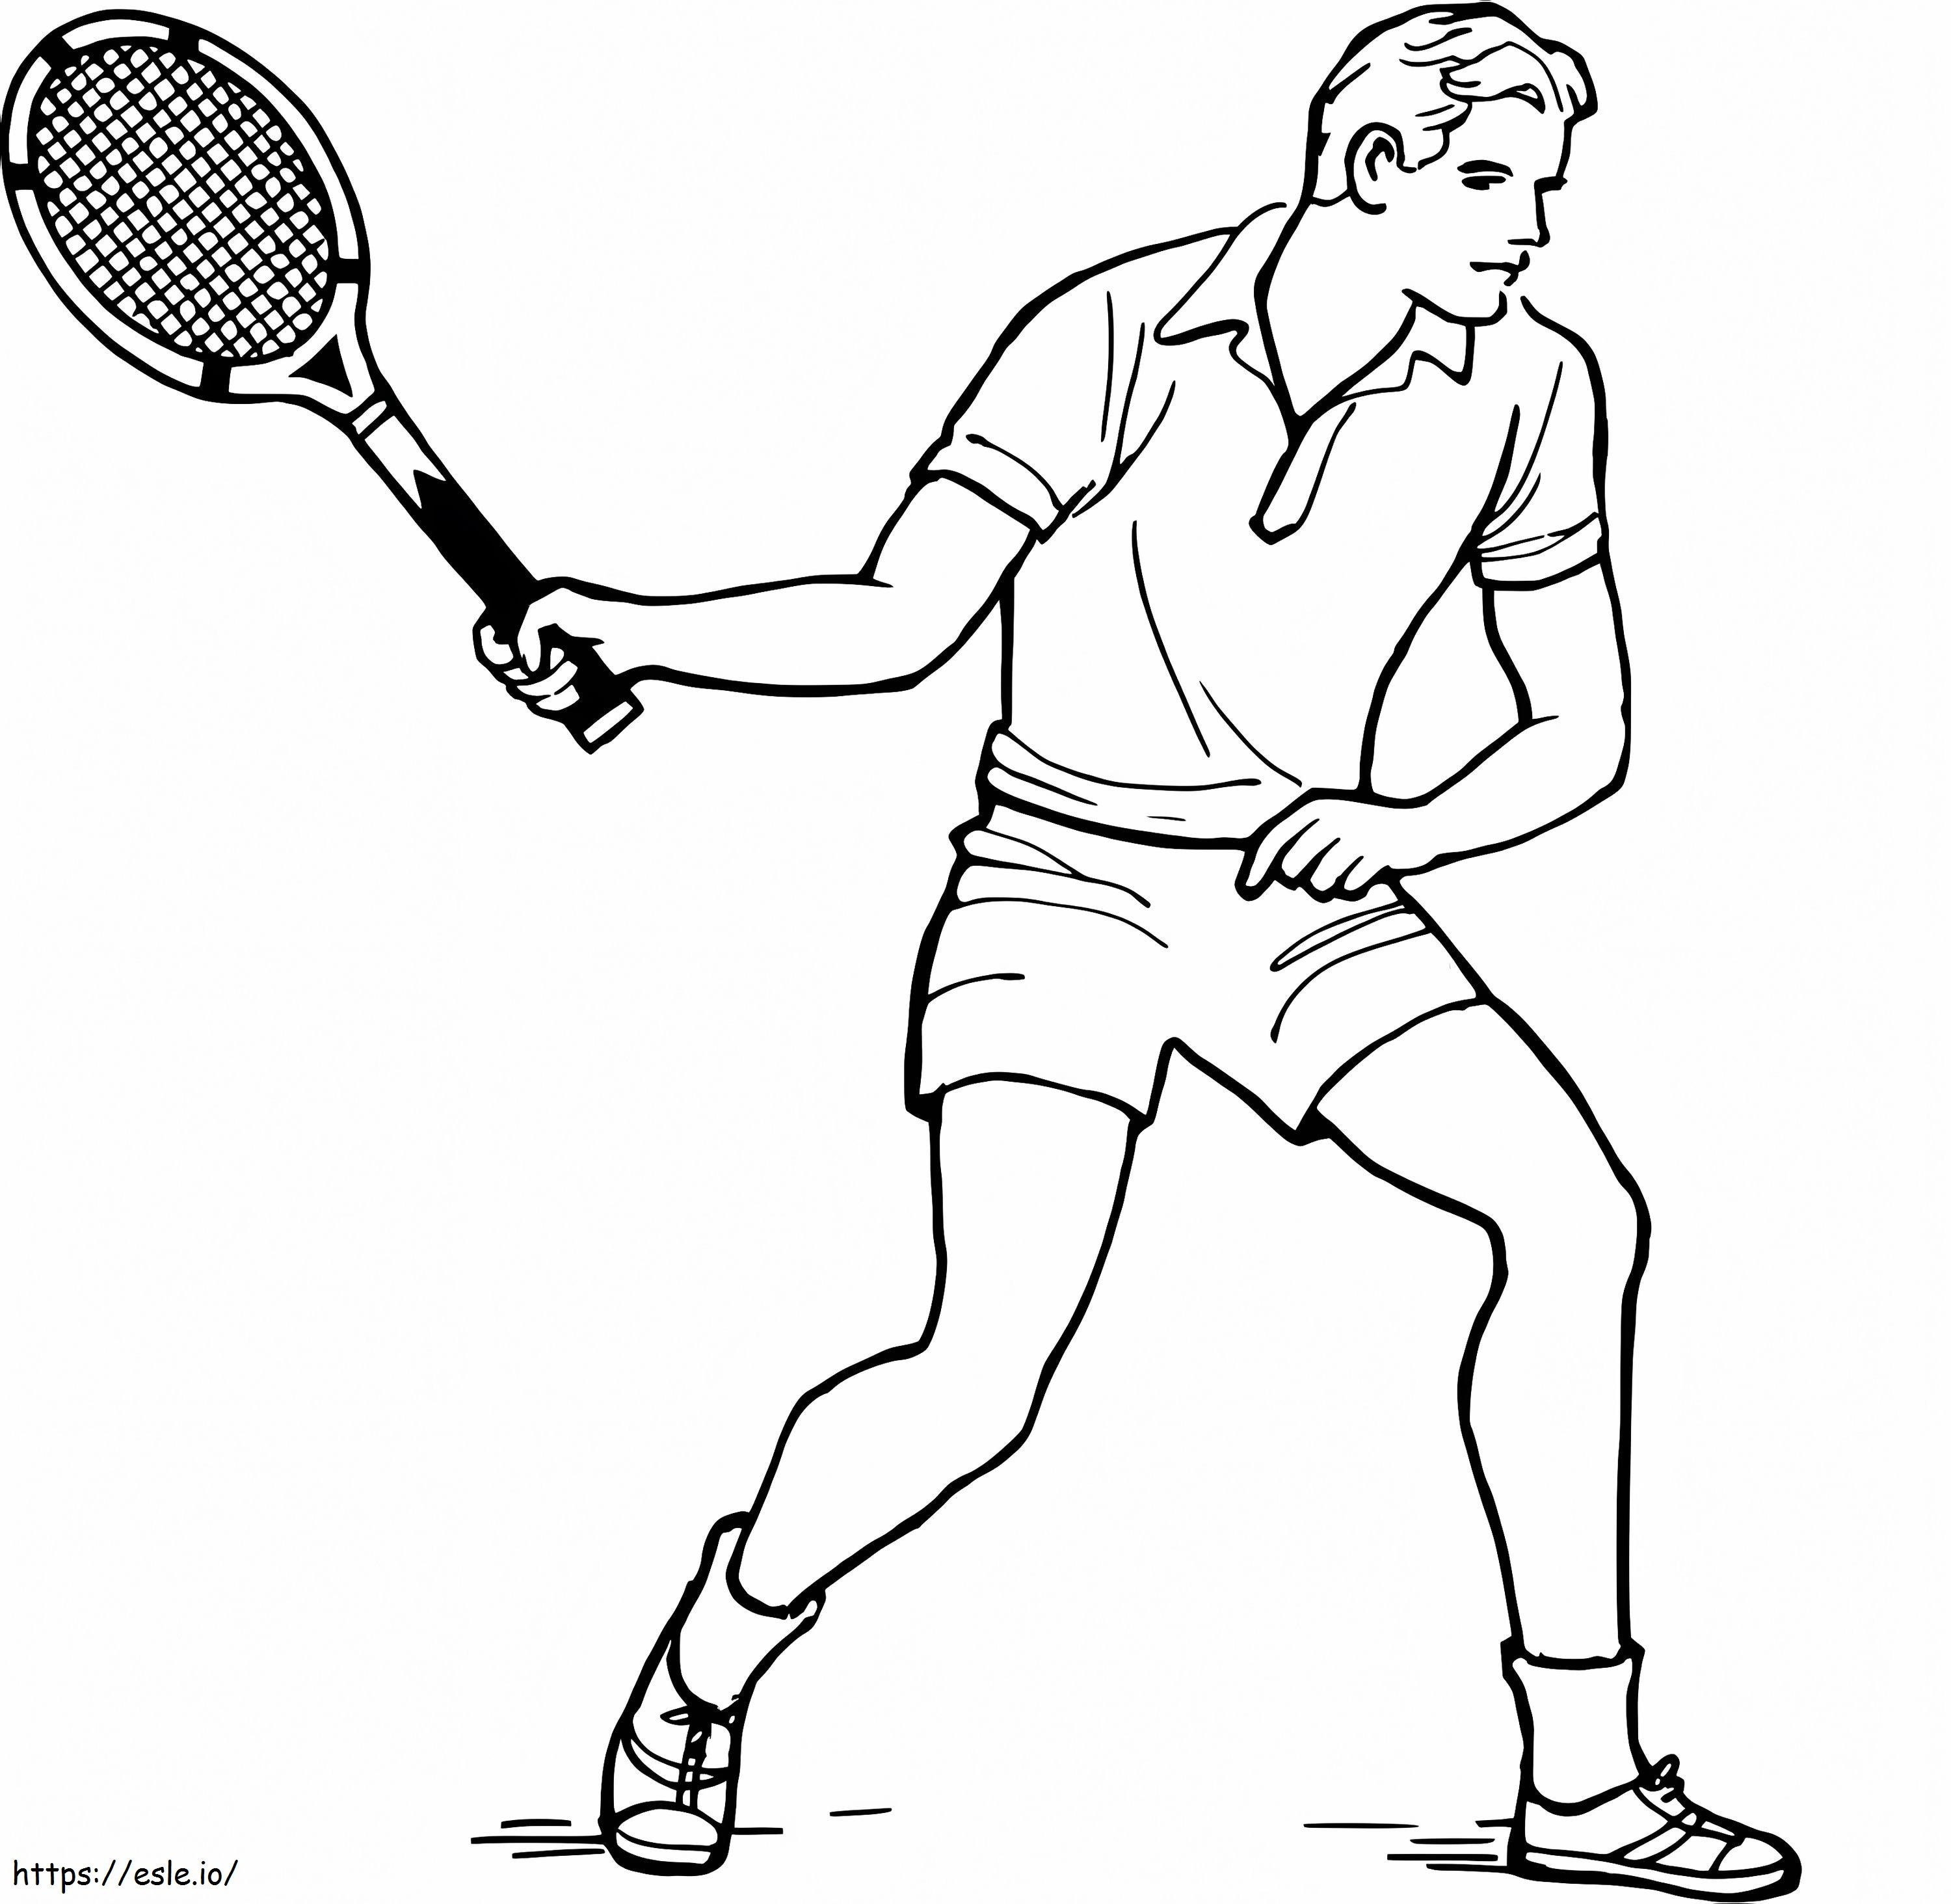 Giocatore di tennis d'epoca da colorare